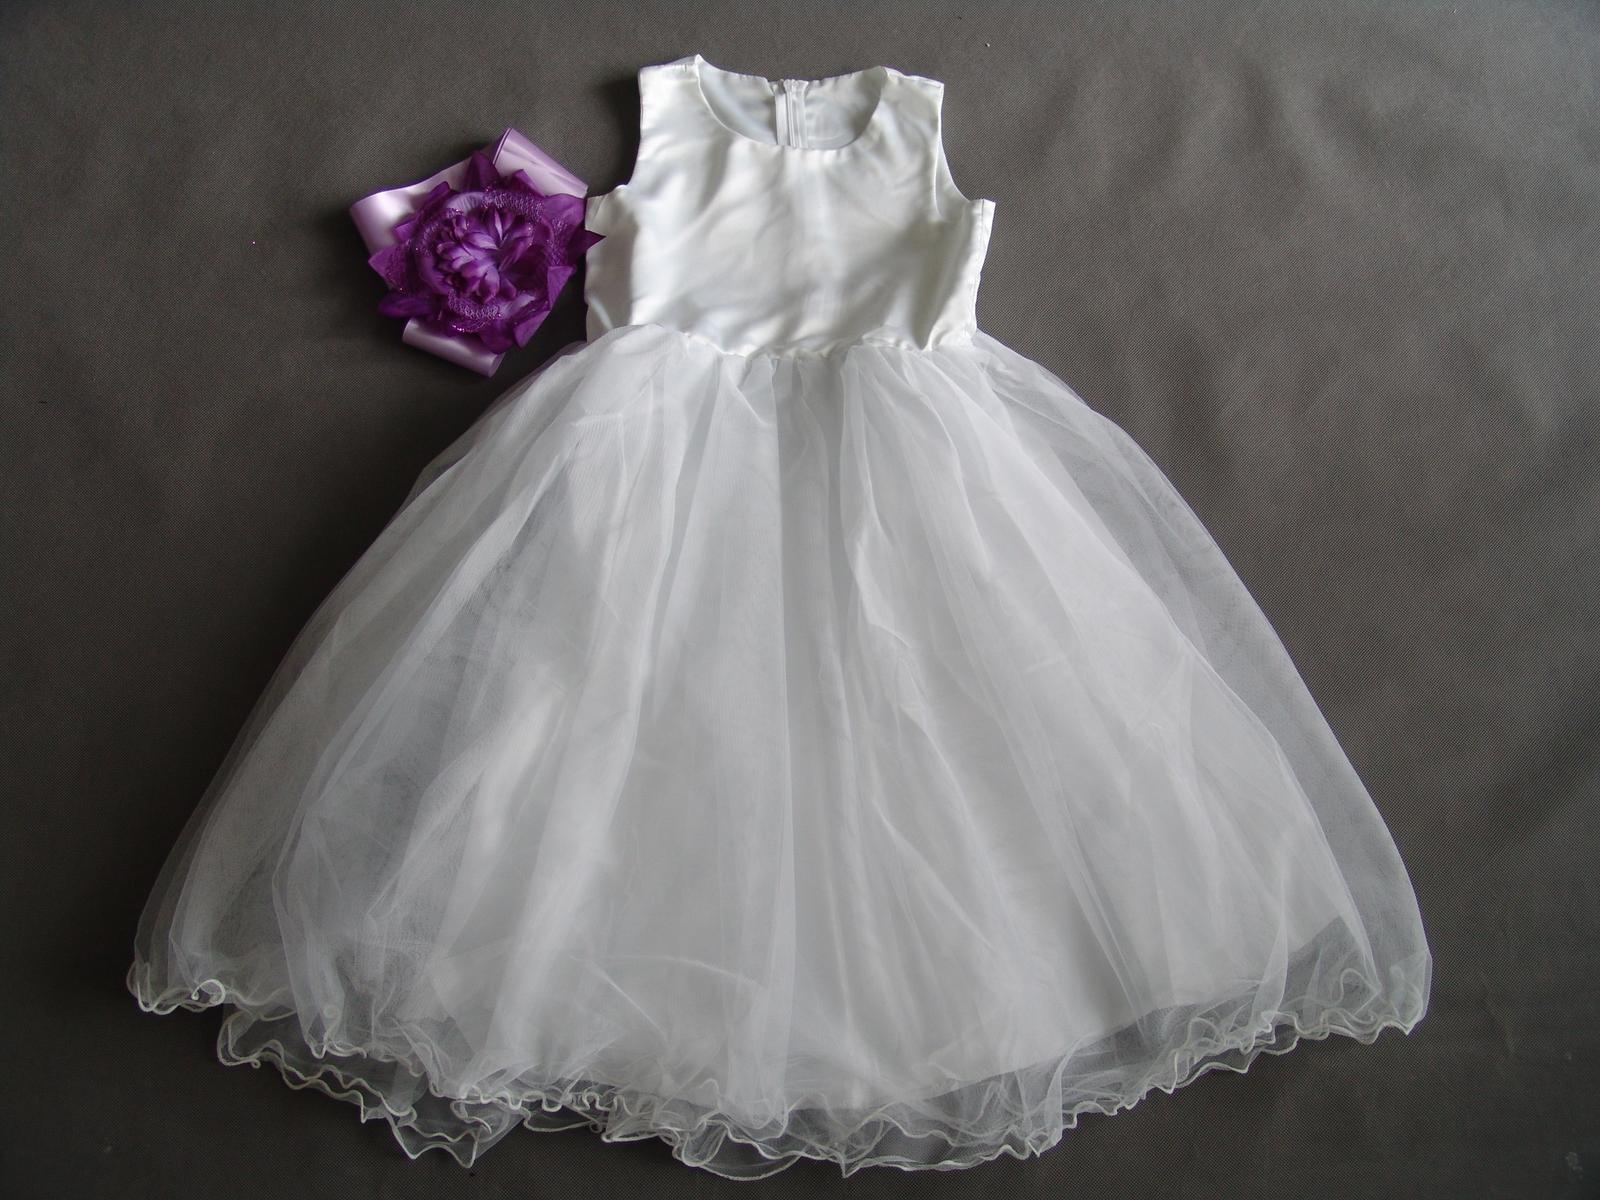 Bílé šaty pro družičku s fialovou stužkou - Obrázek č. 1